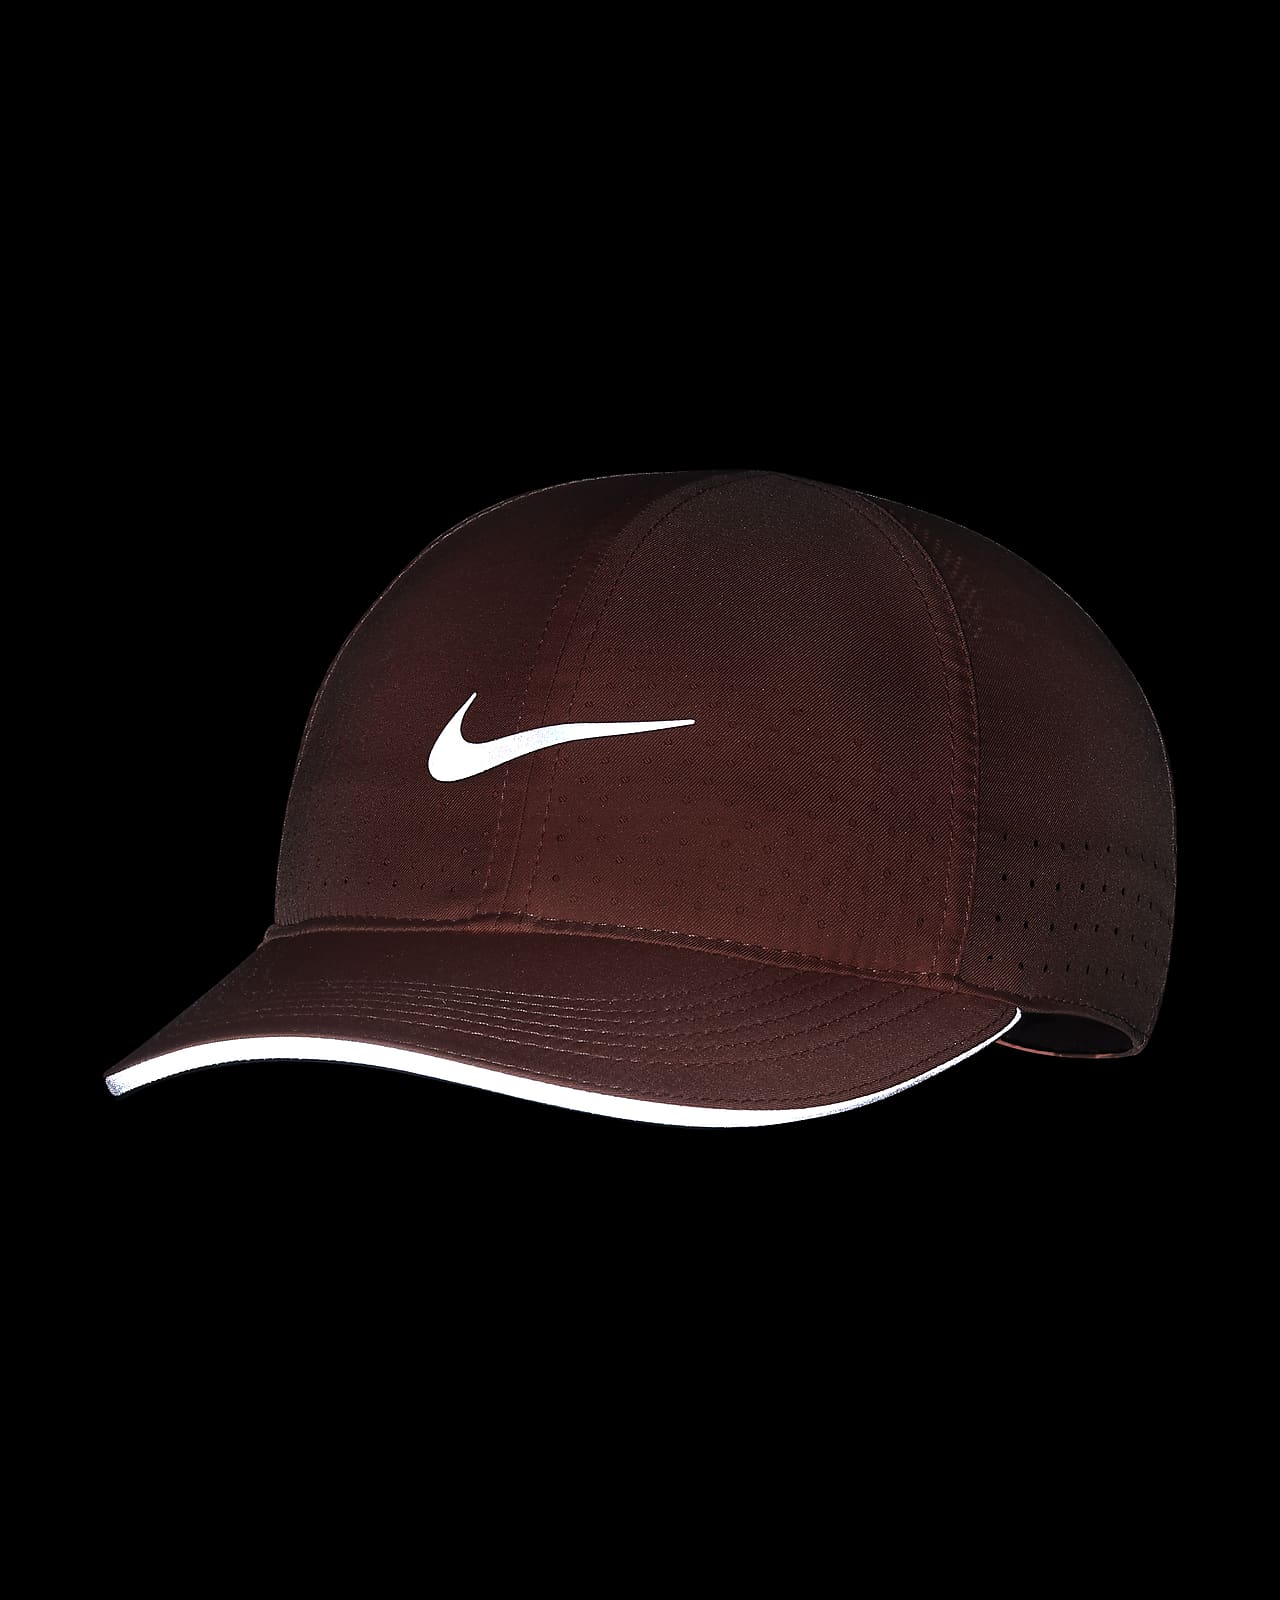 Nike Women's Aerobill Featherlight Adjustable Hat